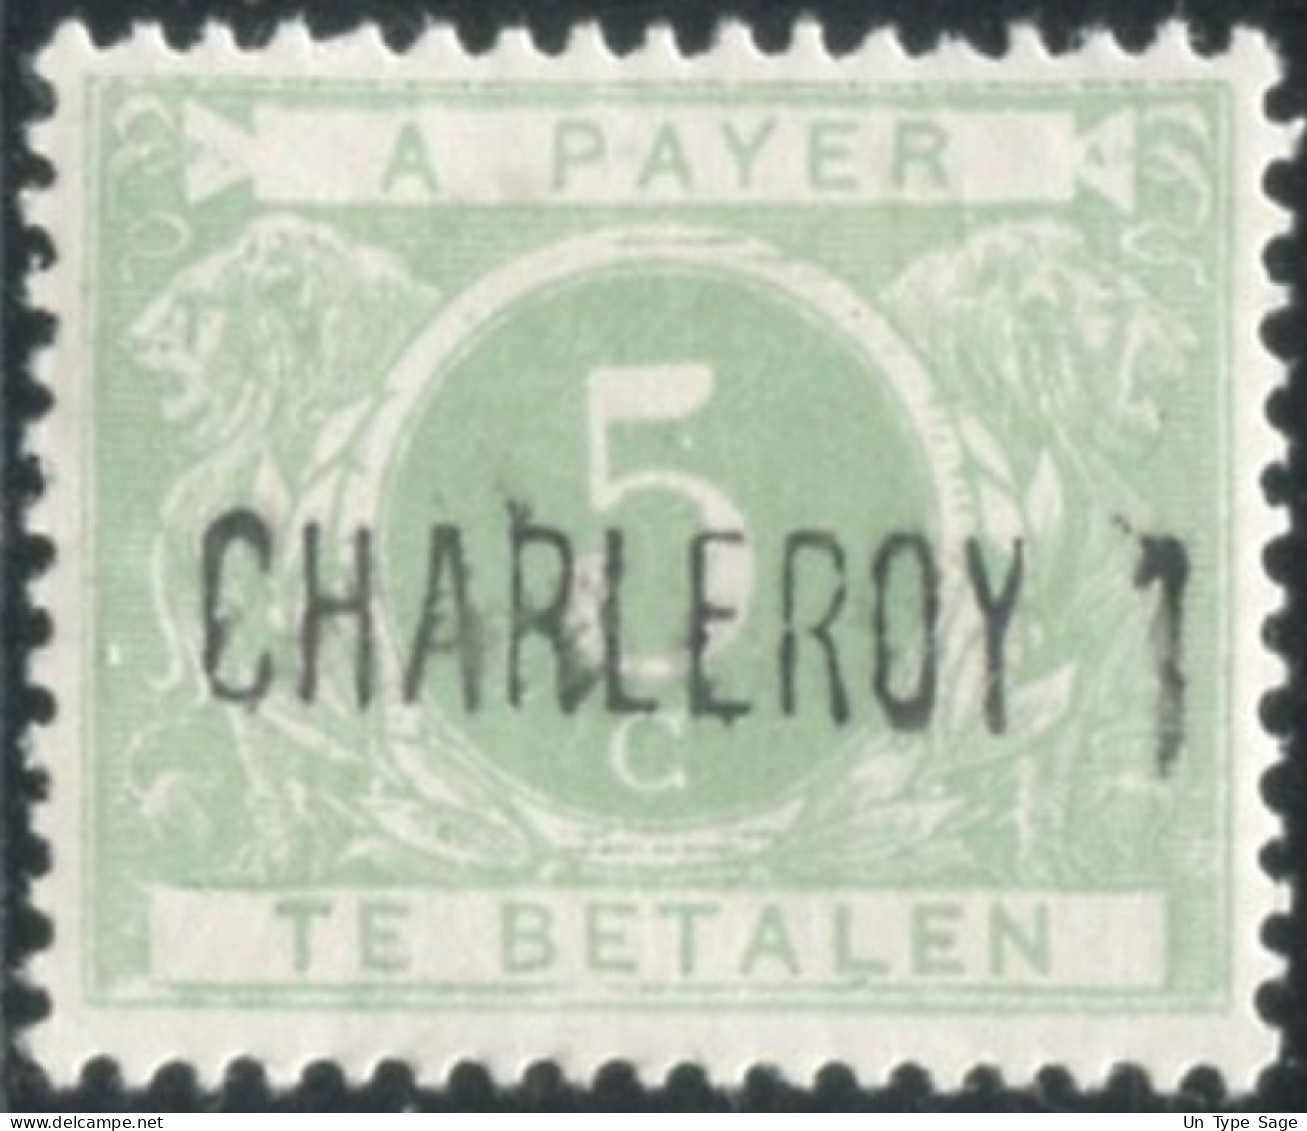 Belgique Timbre-taxe (TX) - Surcharge Locale De Distributeur - CHARLEROY 1 - (F995) - Postzegels